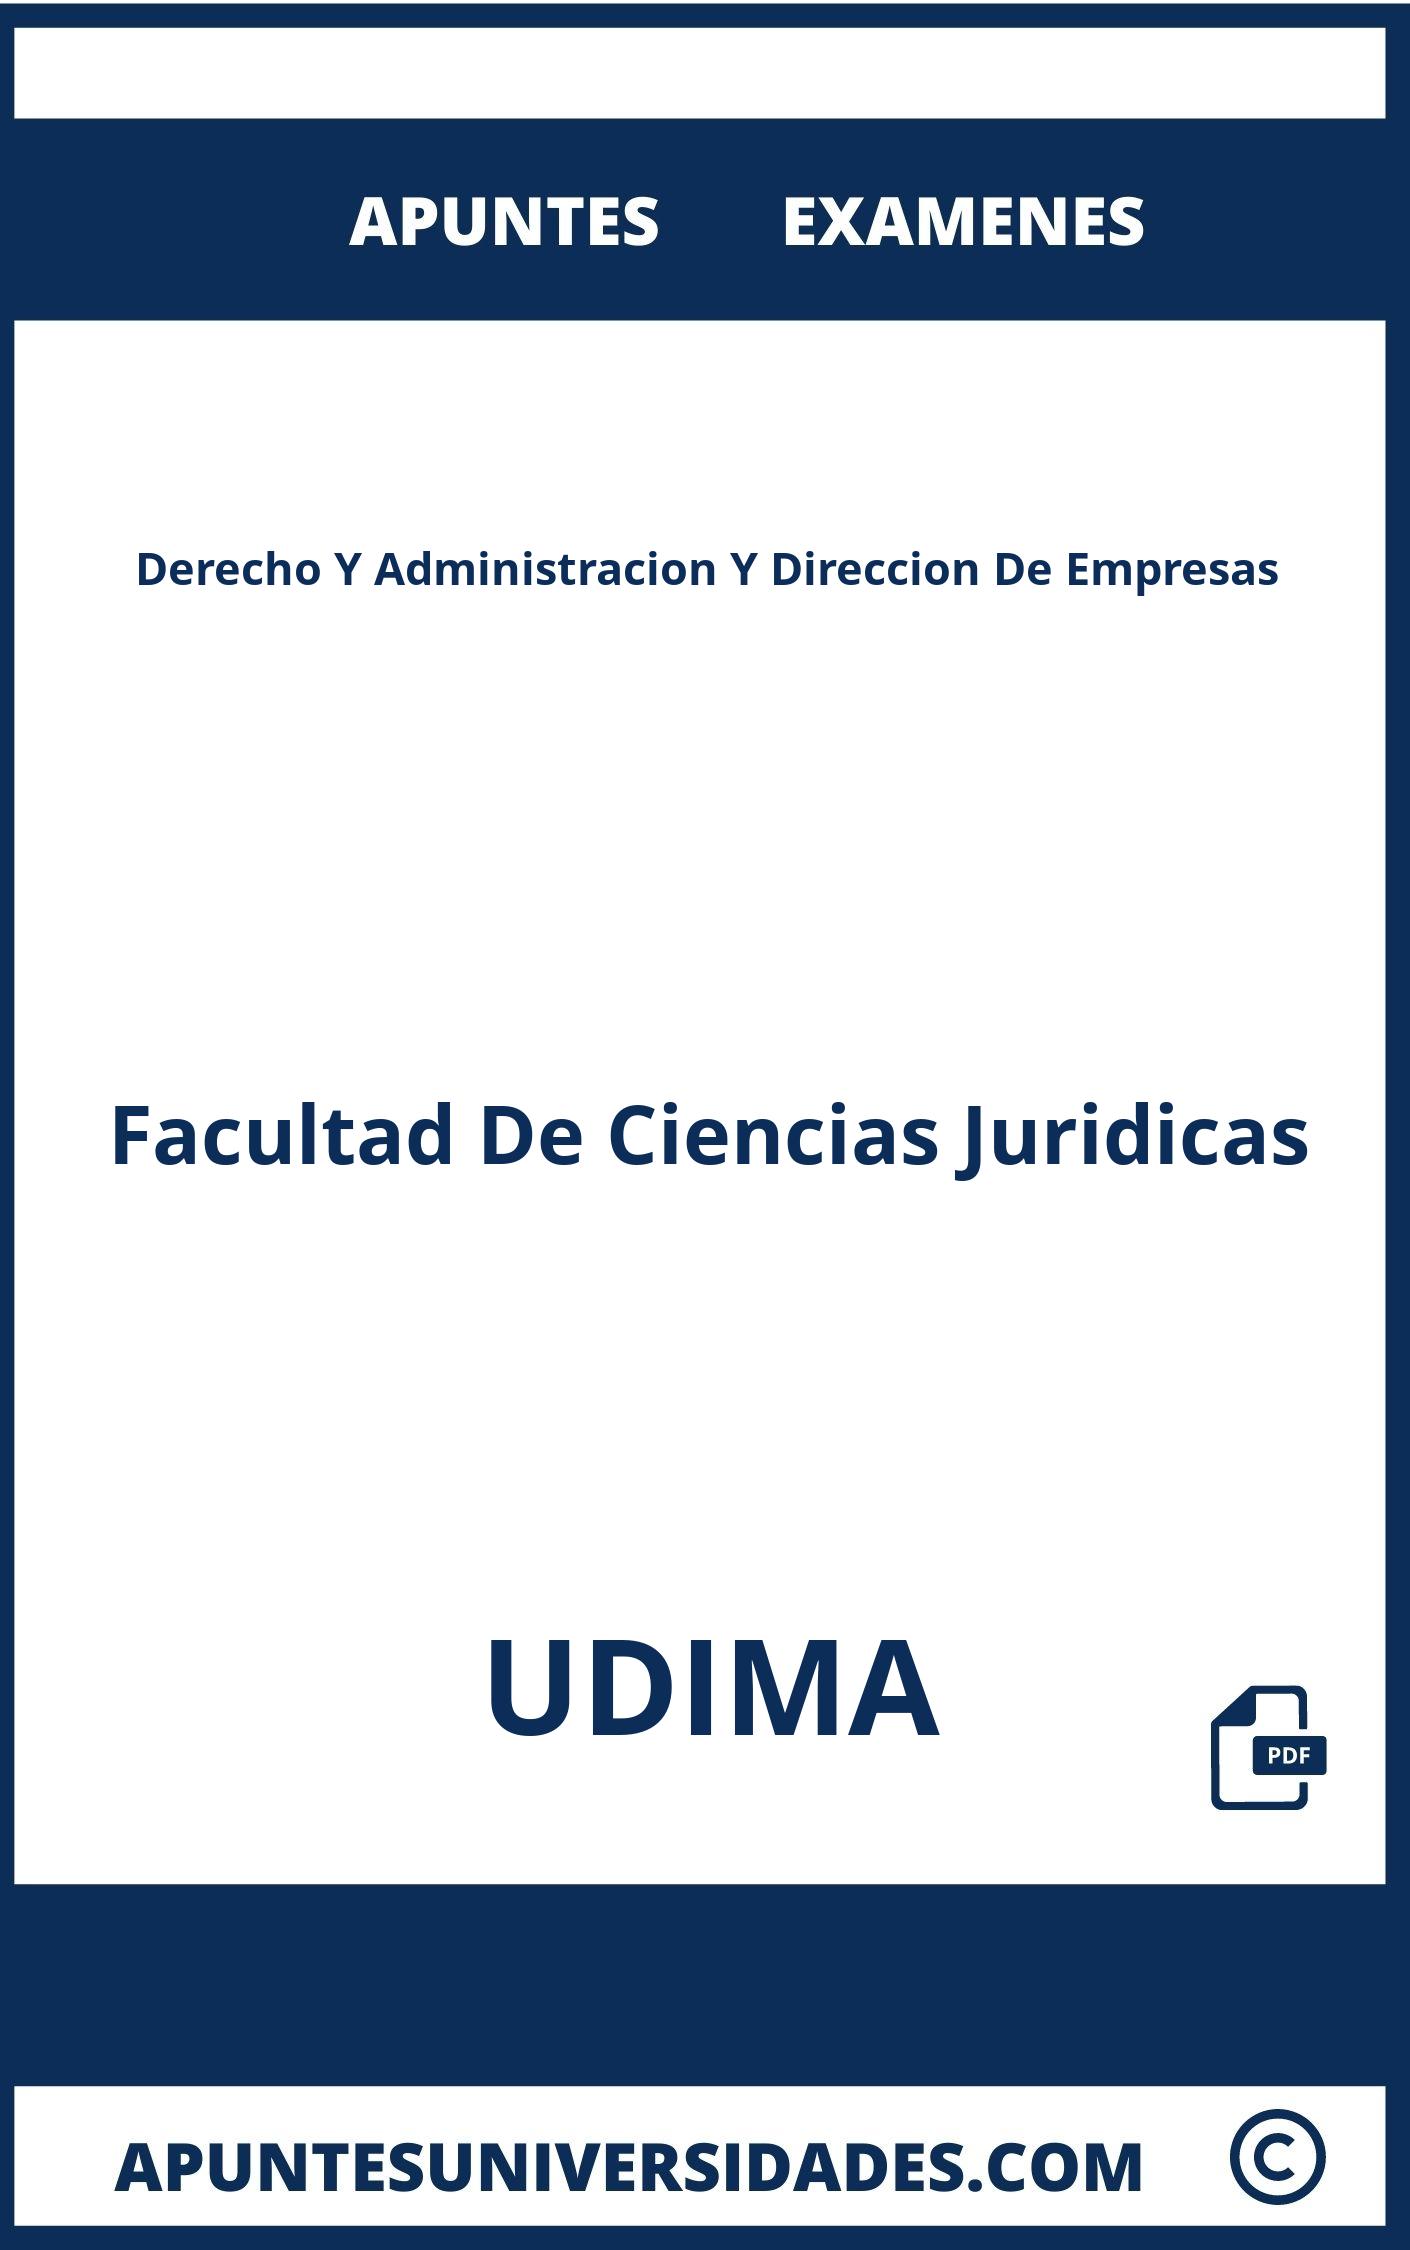 Apuntes Derecho Y Administracion Y Direccion De Empresas UDIMA y Examenes